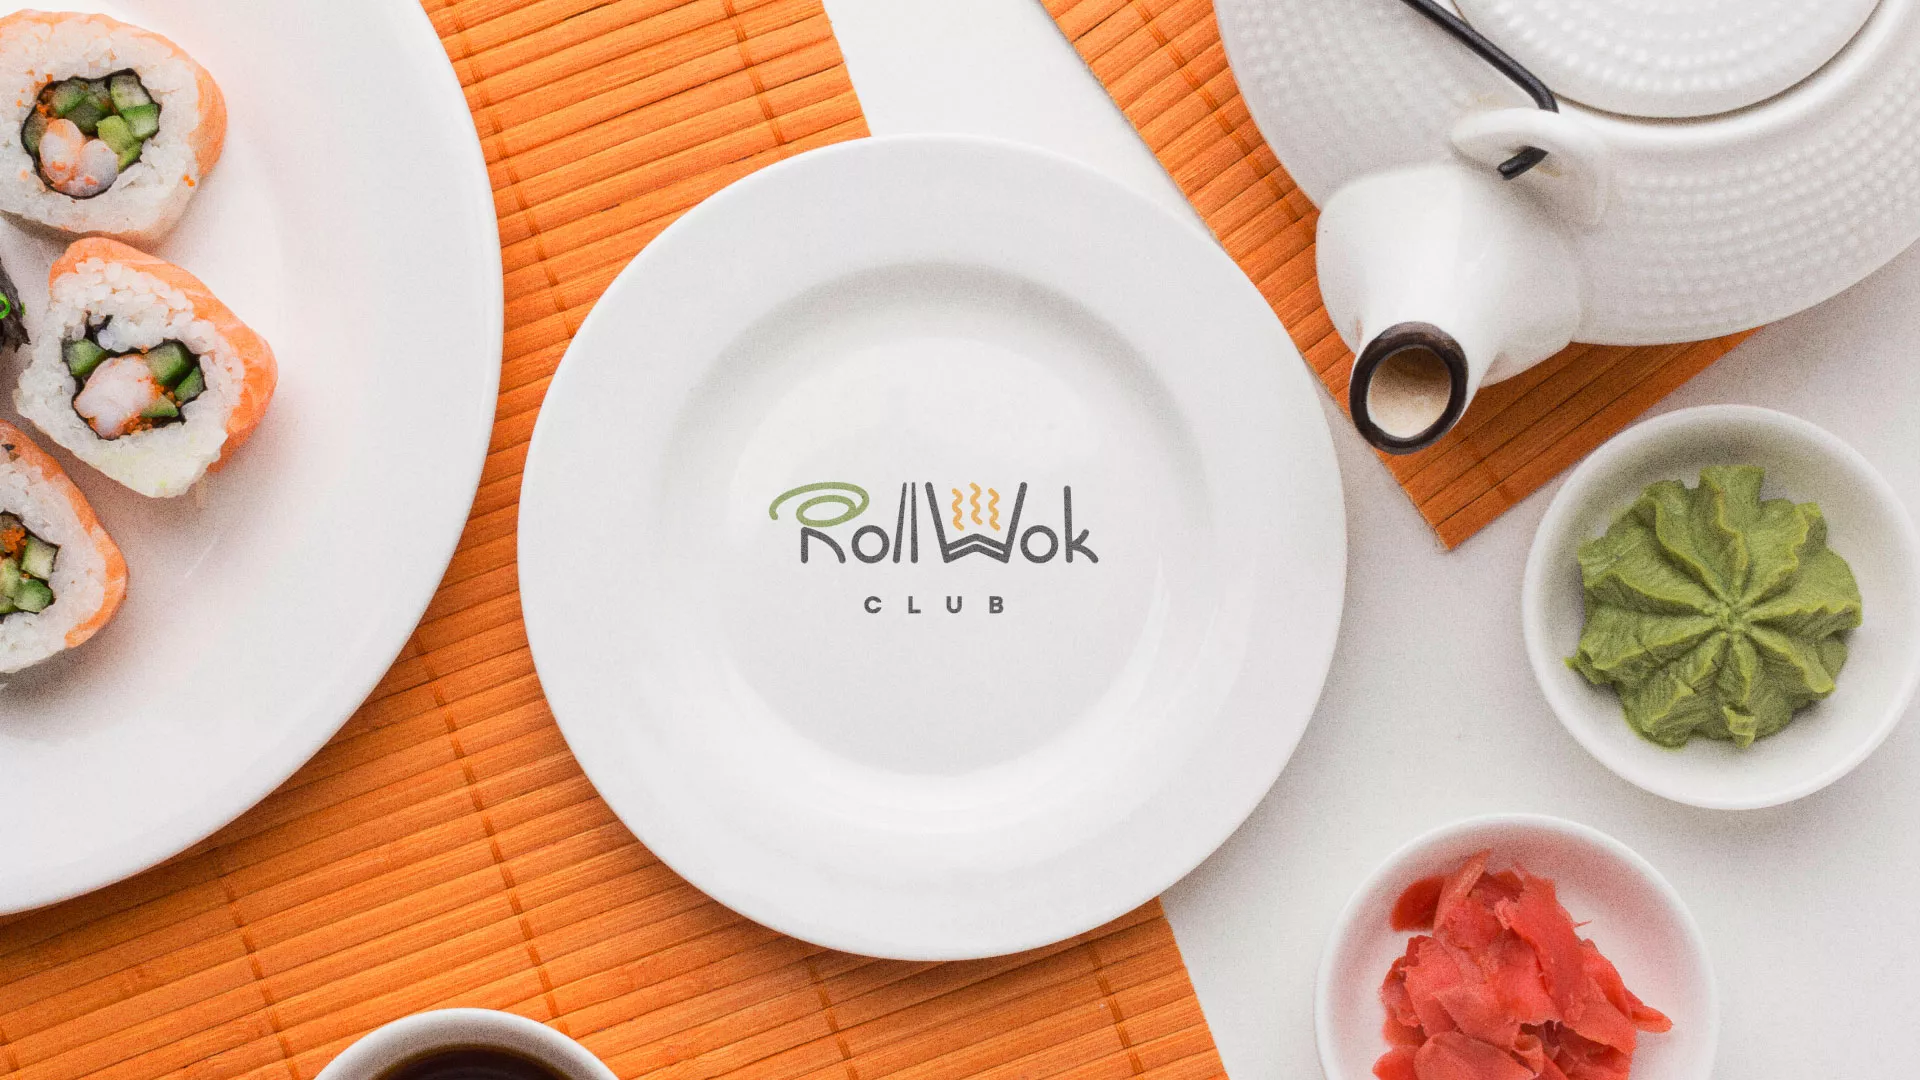 Разработка логотипа и фирменного стиля суши-бара «Roll Wok Club» в Фрязино